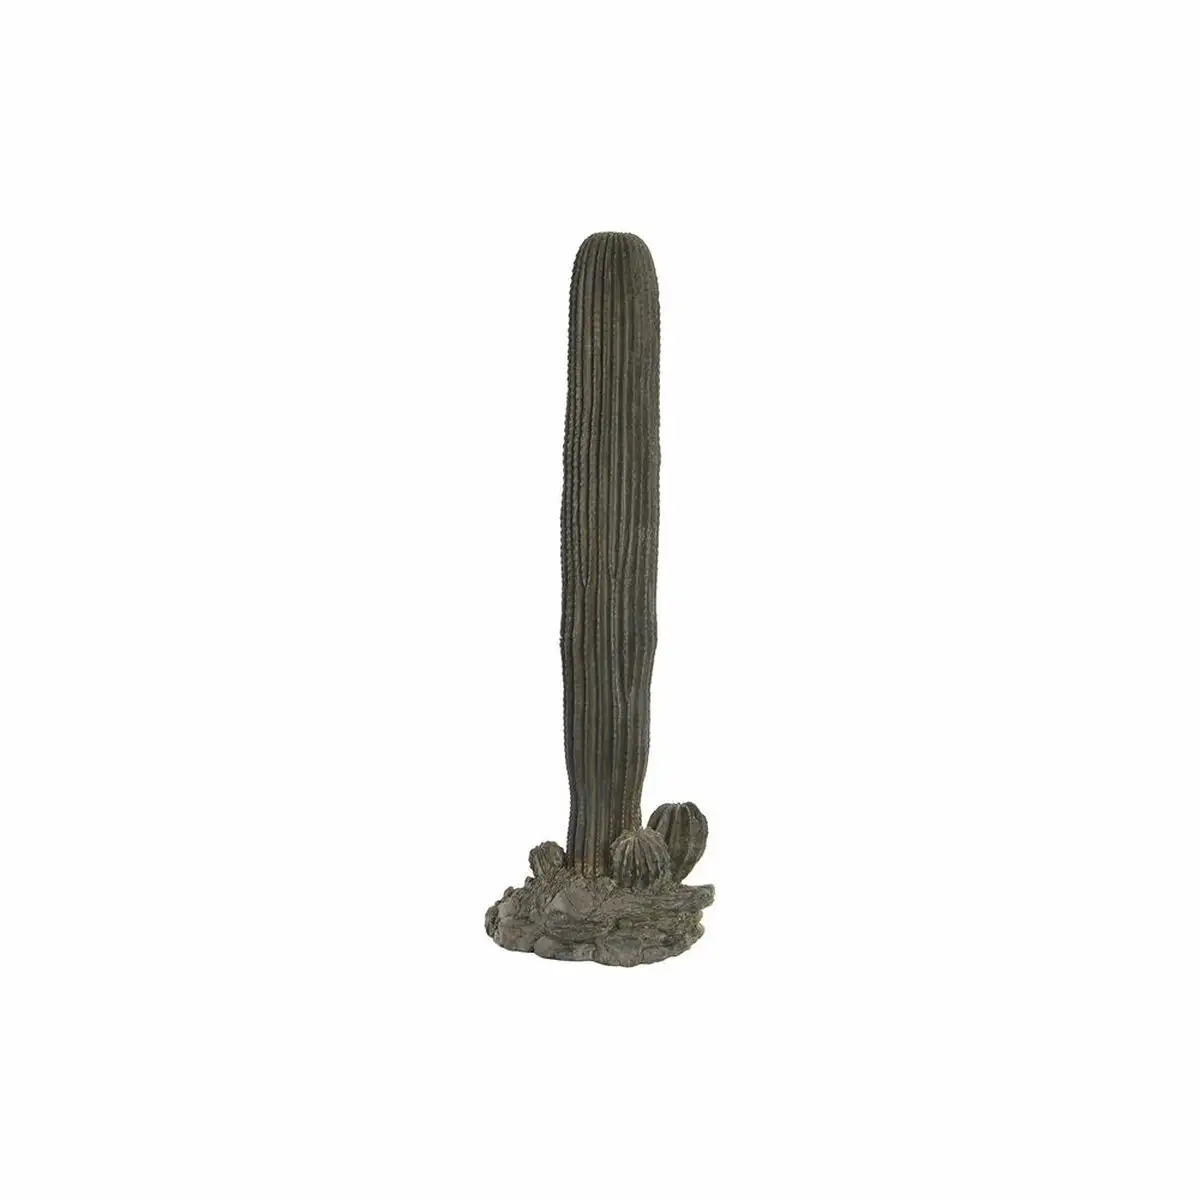 Figurine decorative dkd home decor resine cactus 29 5 x 24 x 82 5 cm _4215. DIAYTAR SENEGAL - L'Équilibre Parfait entre Tradition et Modernité. Explorez notre collection pour trouver des produits qui incarnent la culture et la contemporanéité du Sénégal.